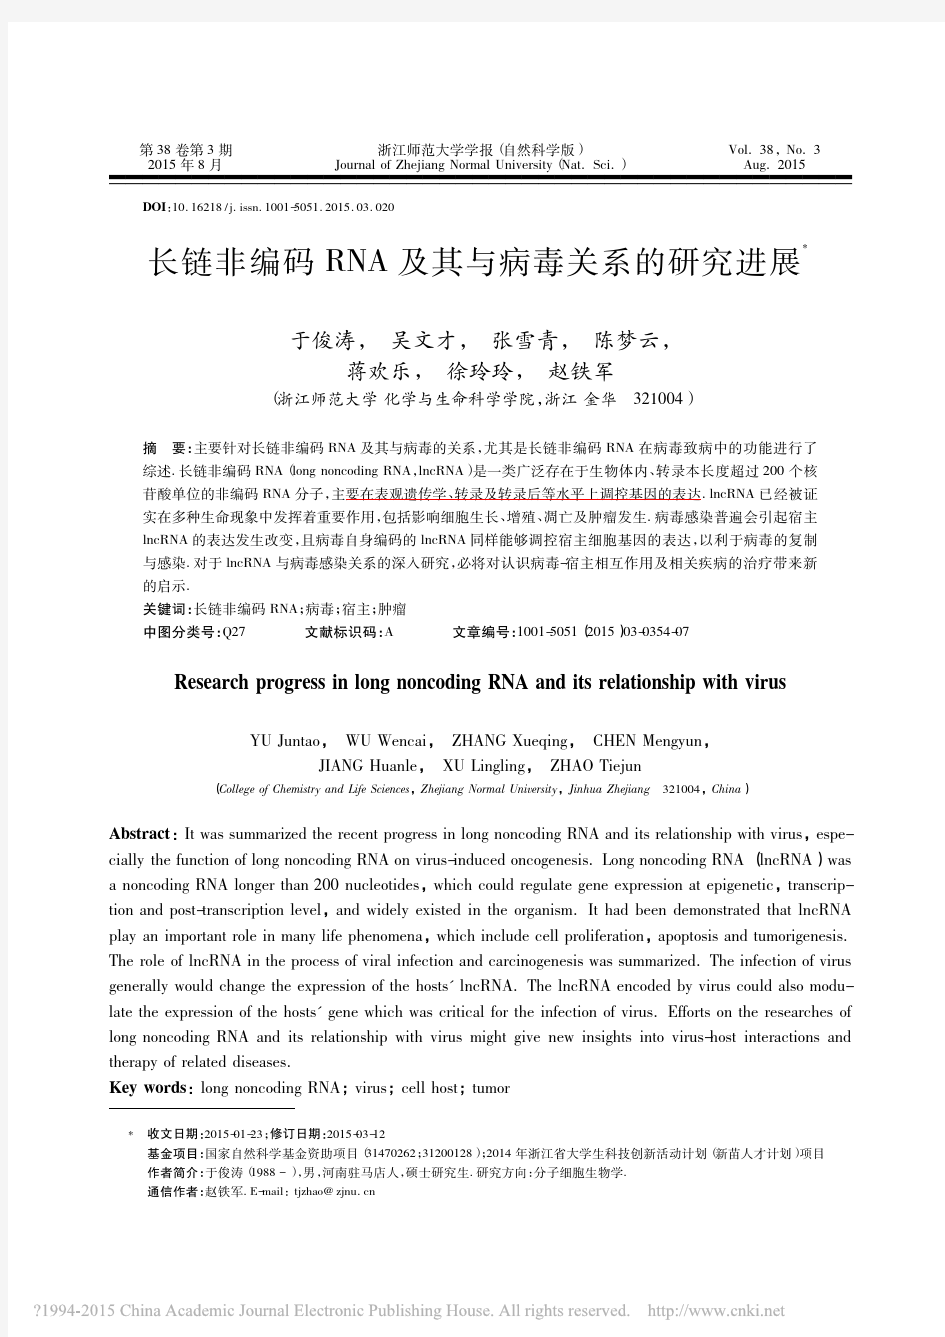 长链非编码RNA及其与病毒关系的研究进展_于俊涛